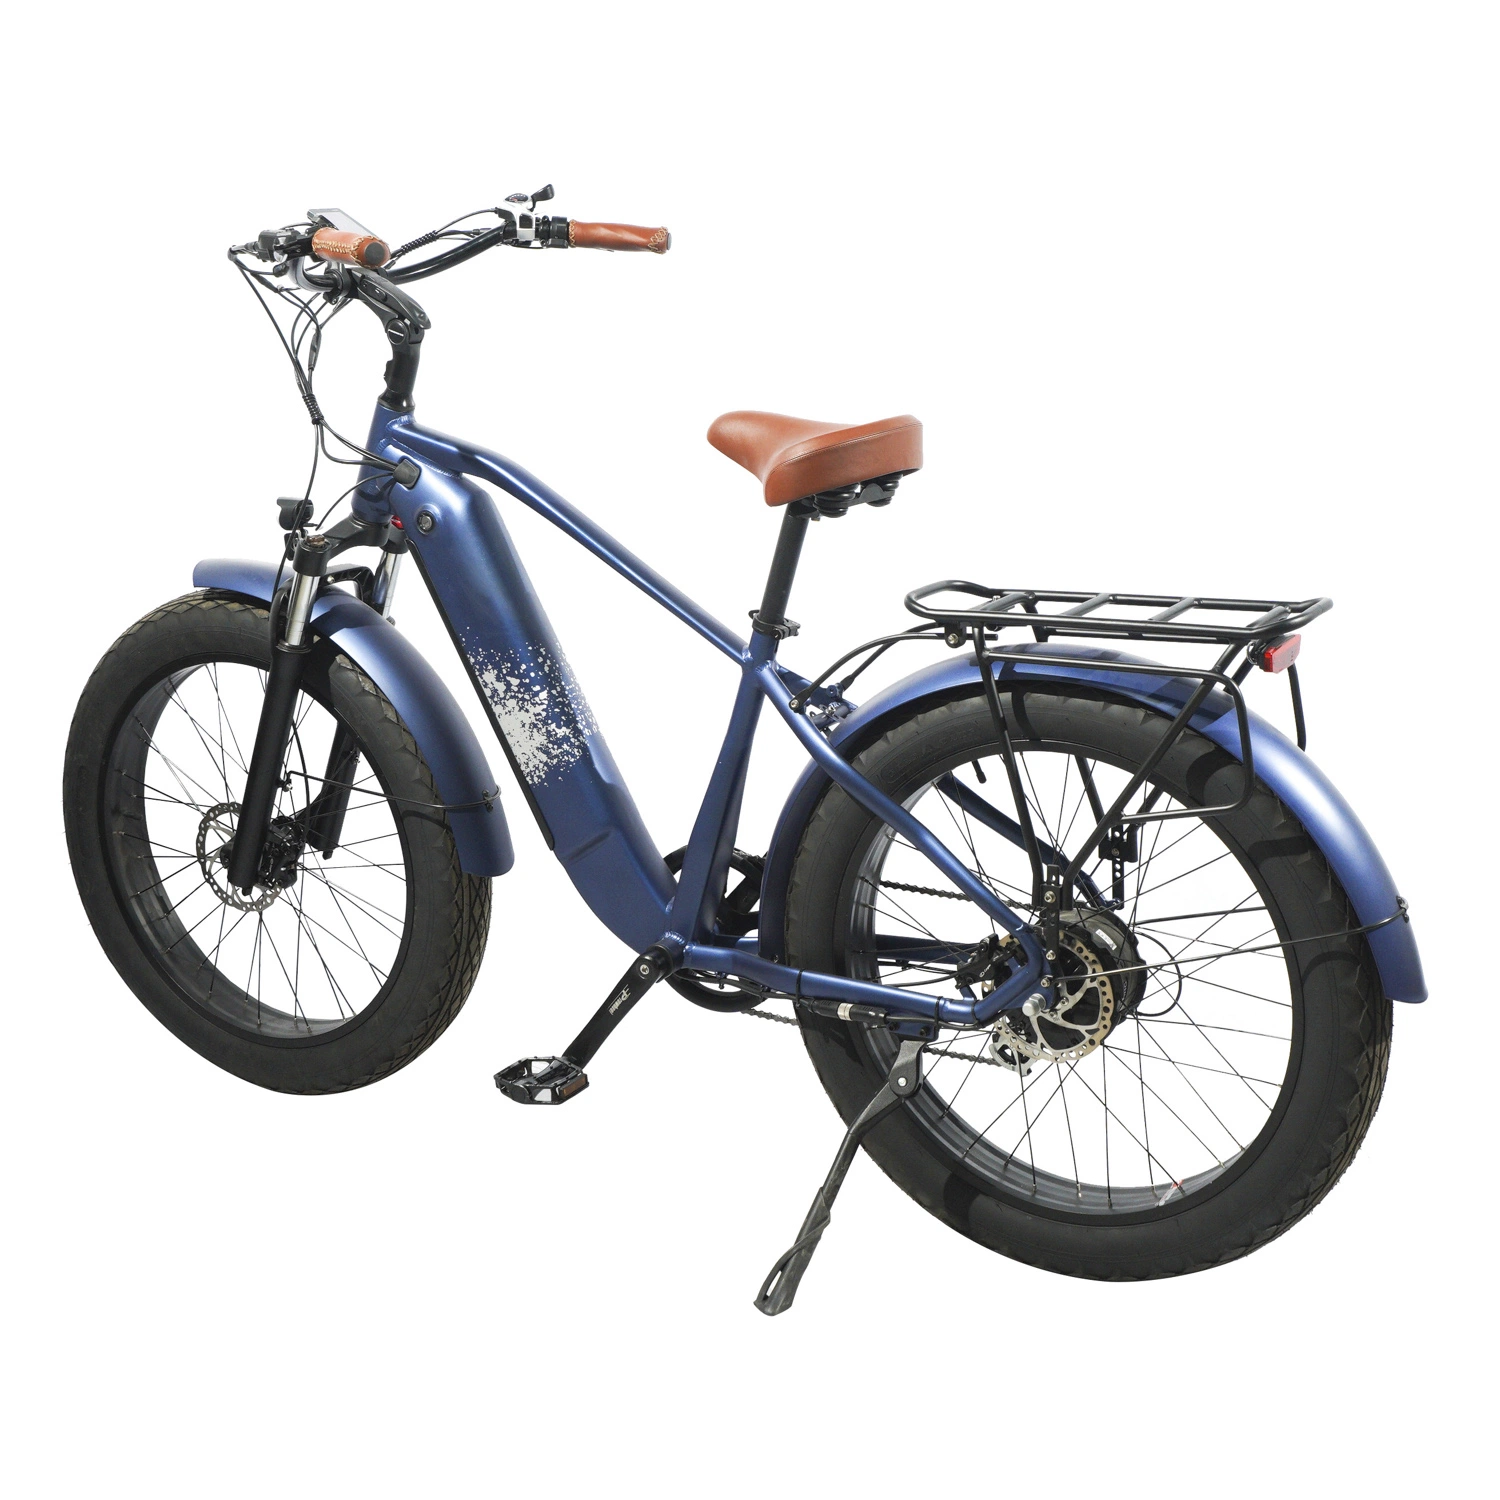 بالغ رخيصة 750 واط 72 فولت كهربائي الدهون دراجة الترابية الدراجات النارية الأسعار الصينية